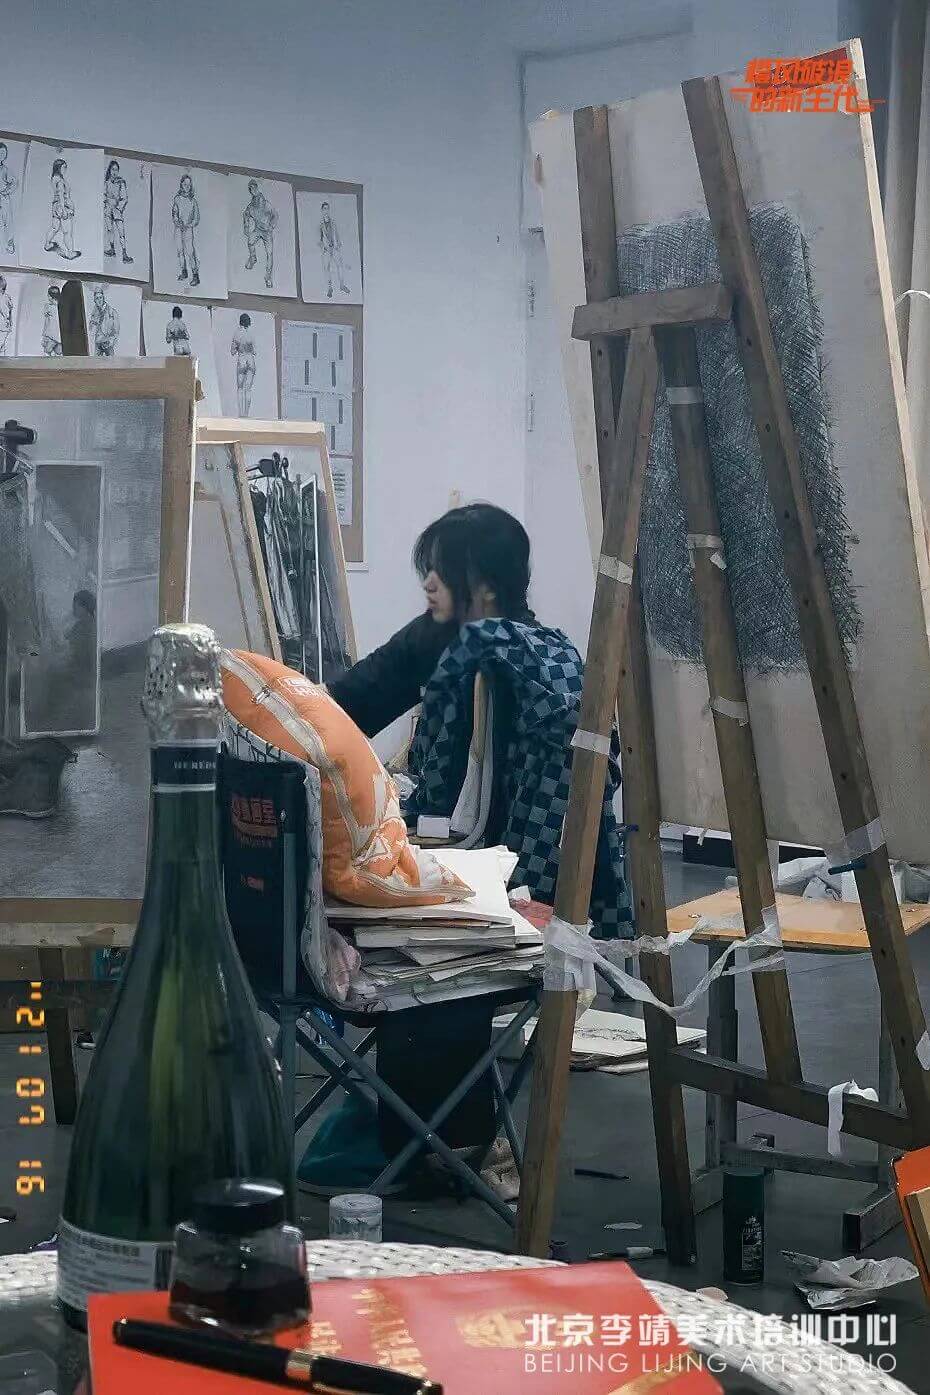 北京美术培训画室